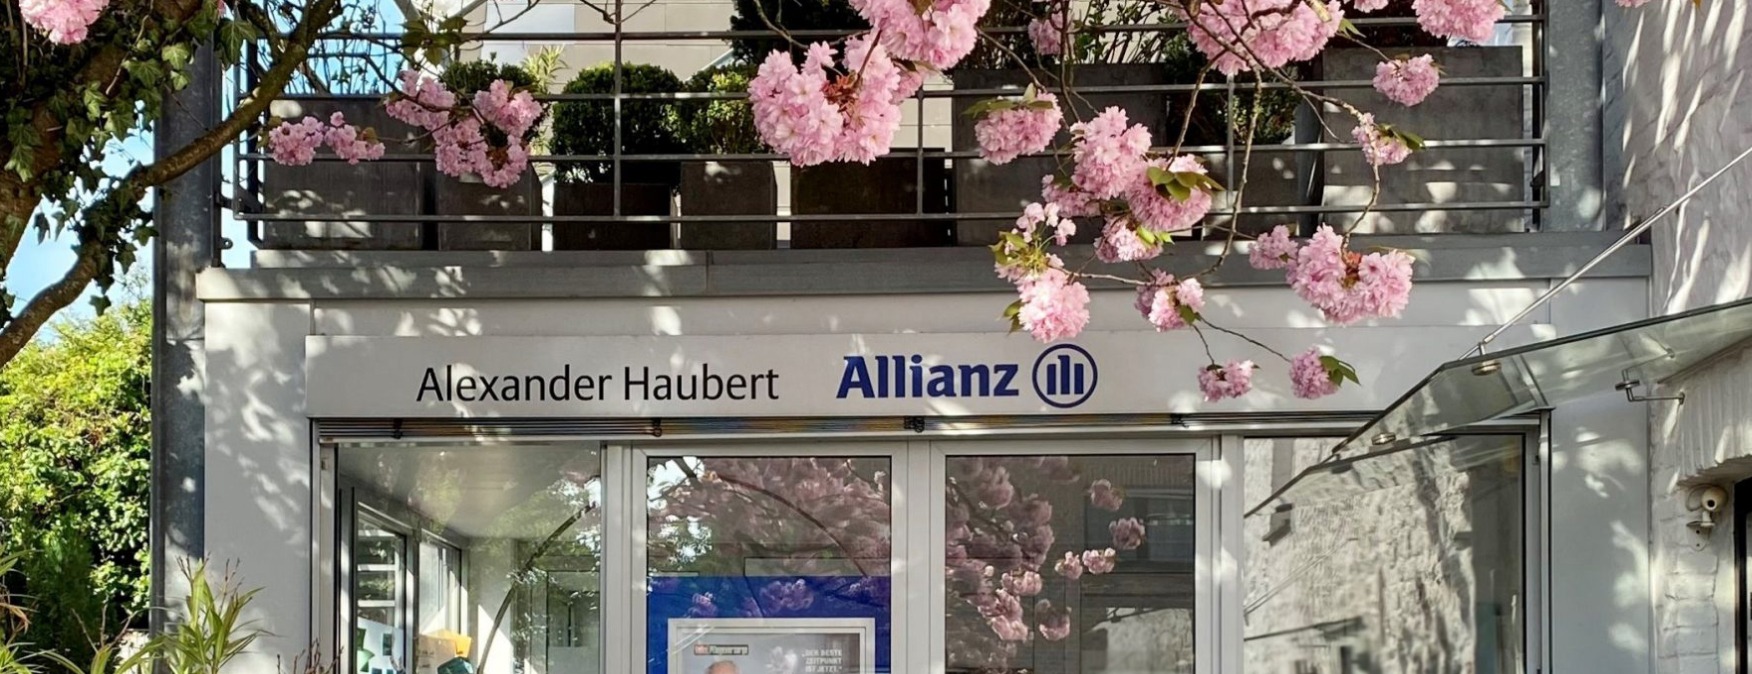 Allianz Versicherung Alexander Haubert Aachen - Allianz Haubert Firmenfachagentur BAV Aachen Brand